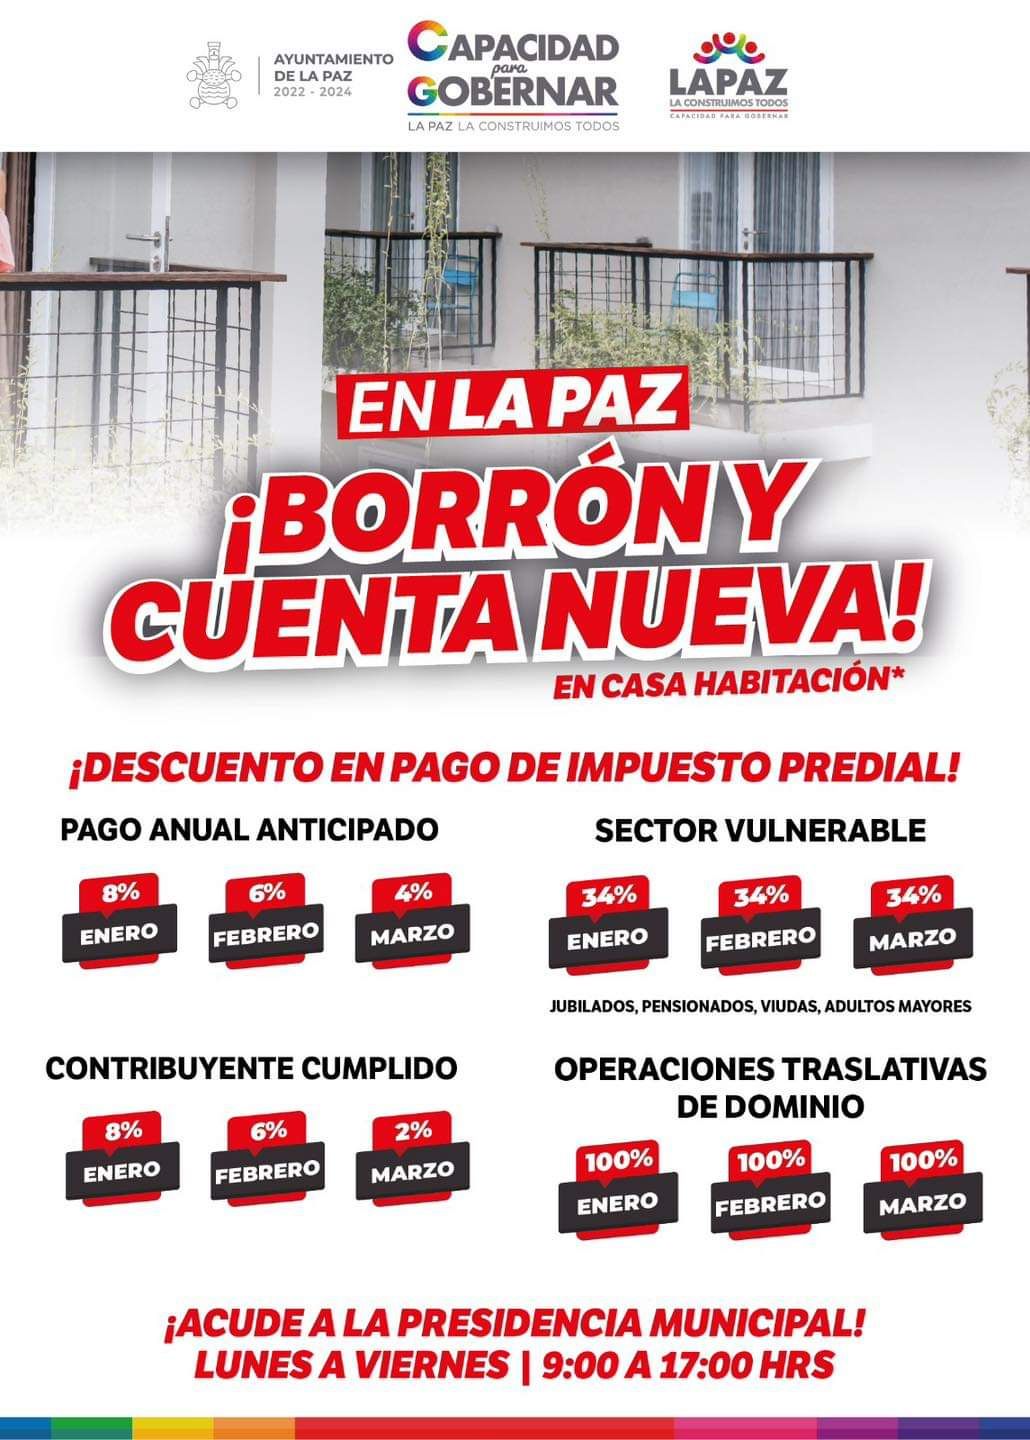 Gobierno que encabeza Cristina González   recompensa a los contribuyentes cumplidos con borrón y cuenta nueva en La Paz 
